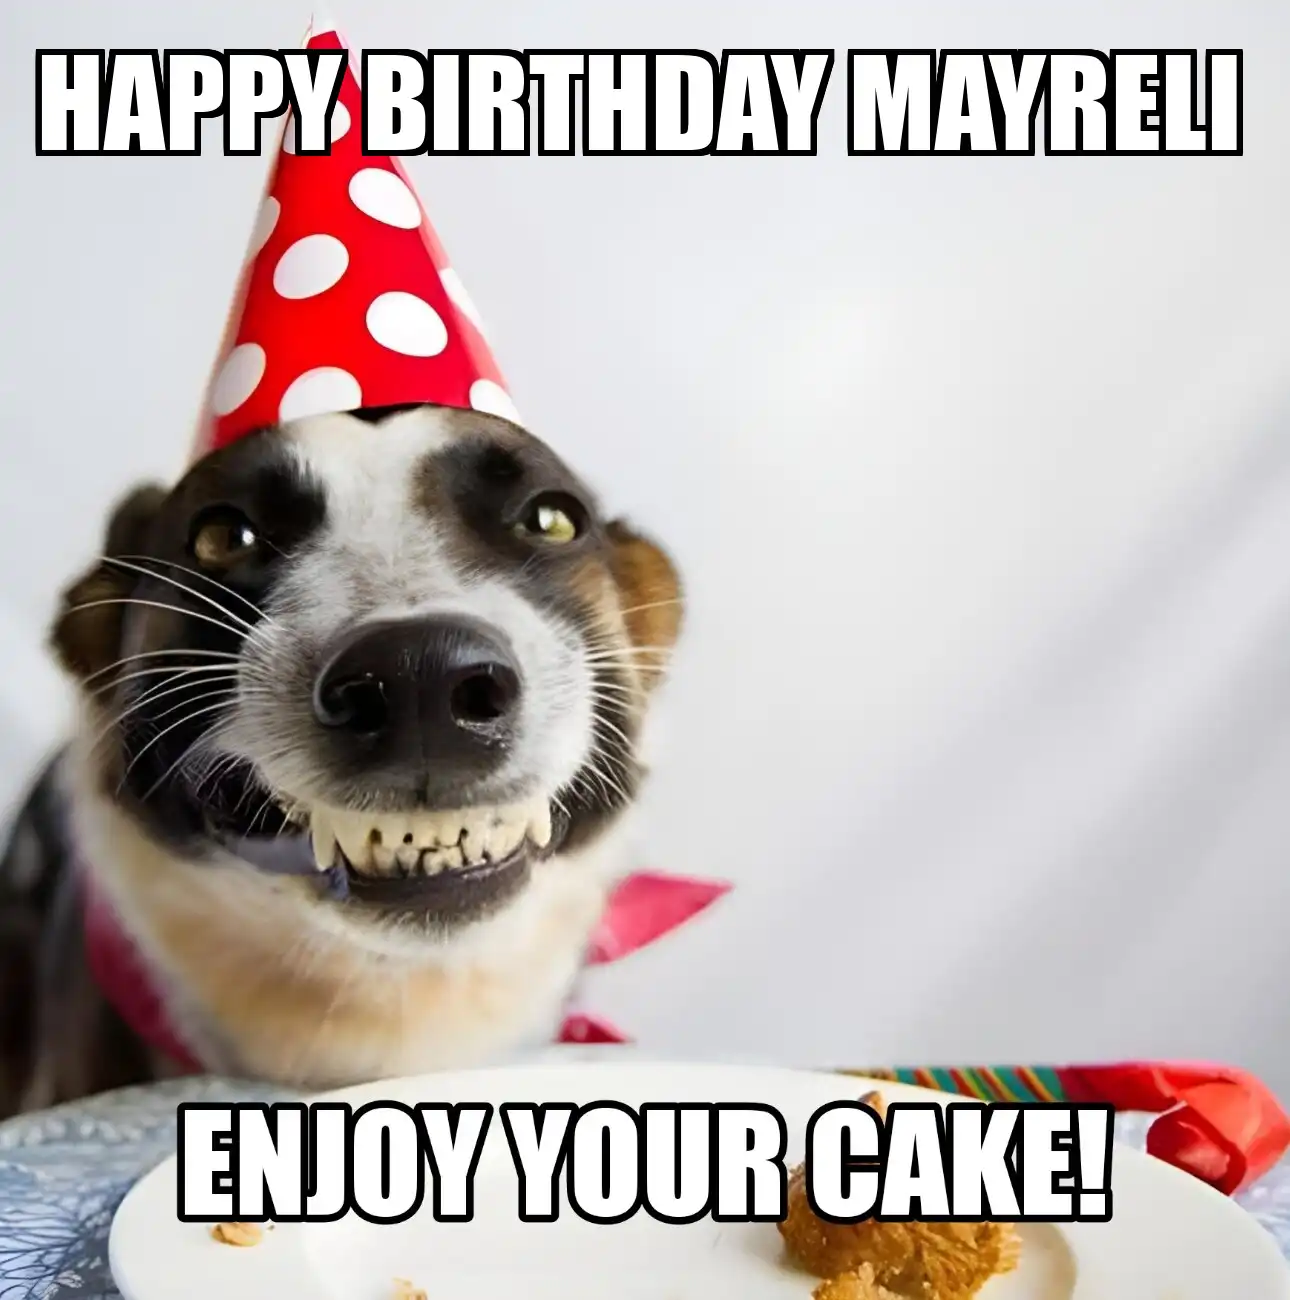 Happy Birthday Mayreli Enjoy Your Cake Dog Meme